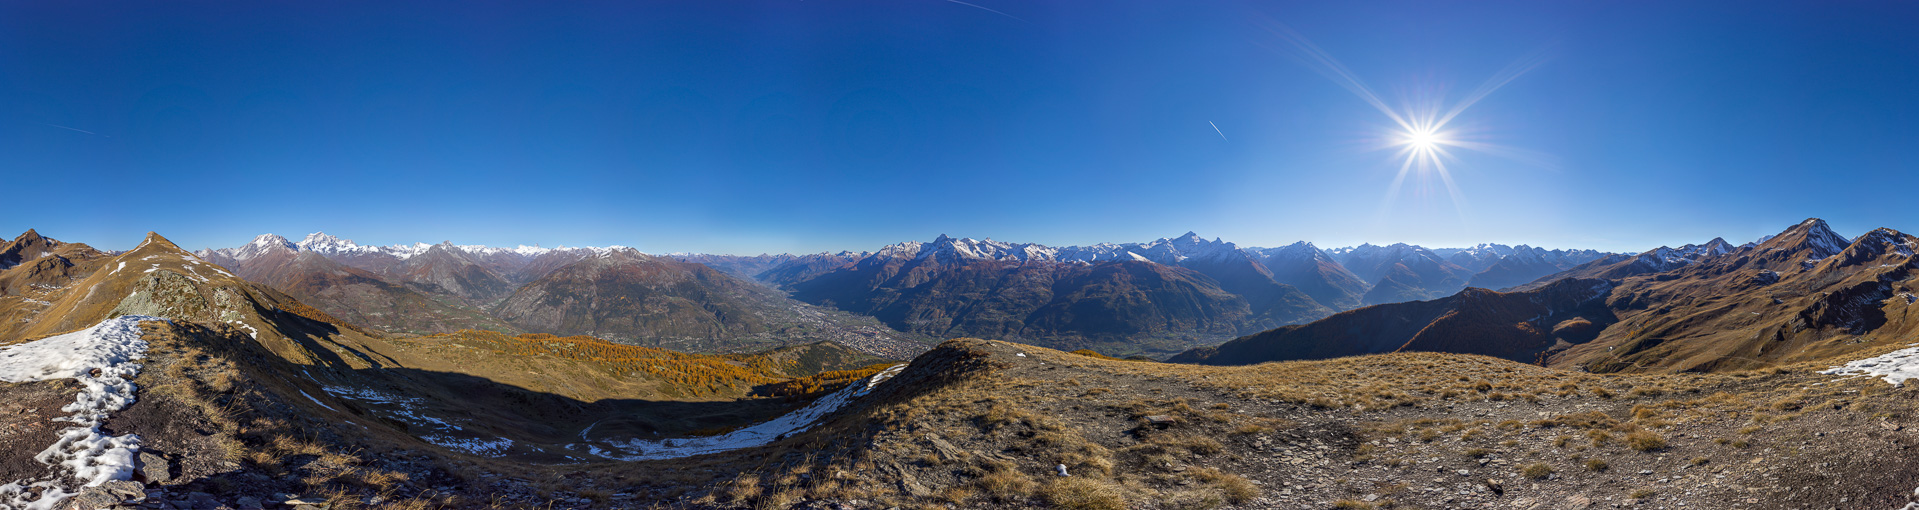 Gipfelpanorama vom dritten Berg des Tages mit wunderbarem Blick ins Aostatal.